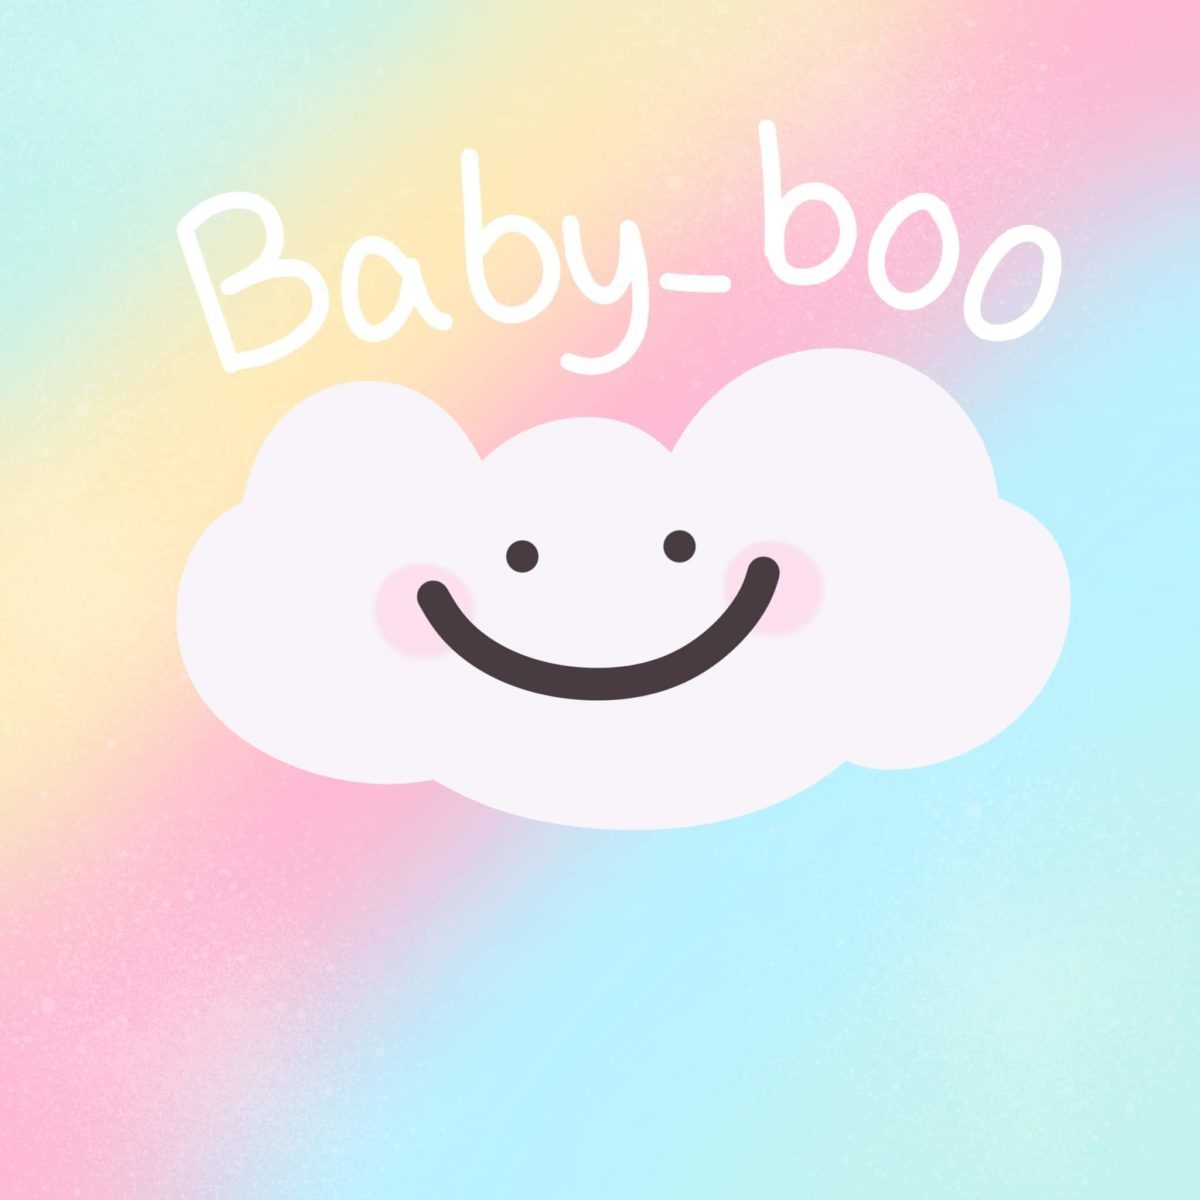 Baby_boo